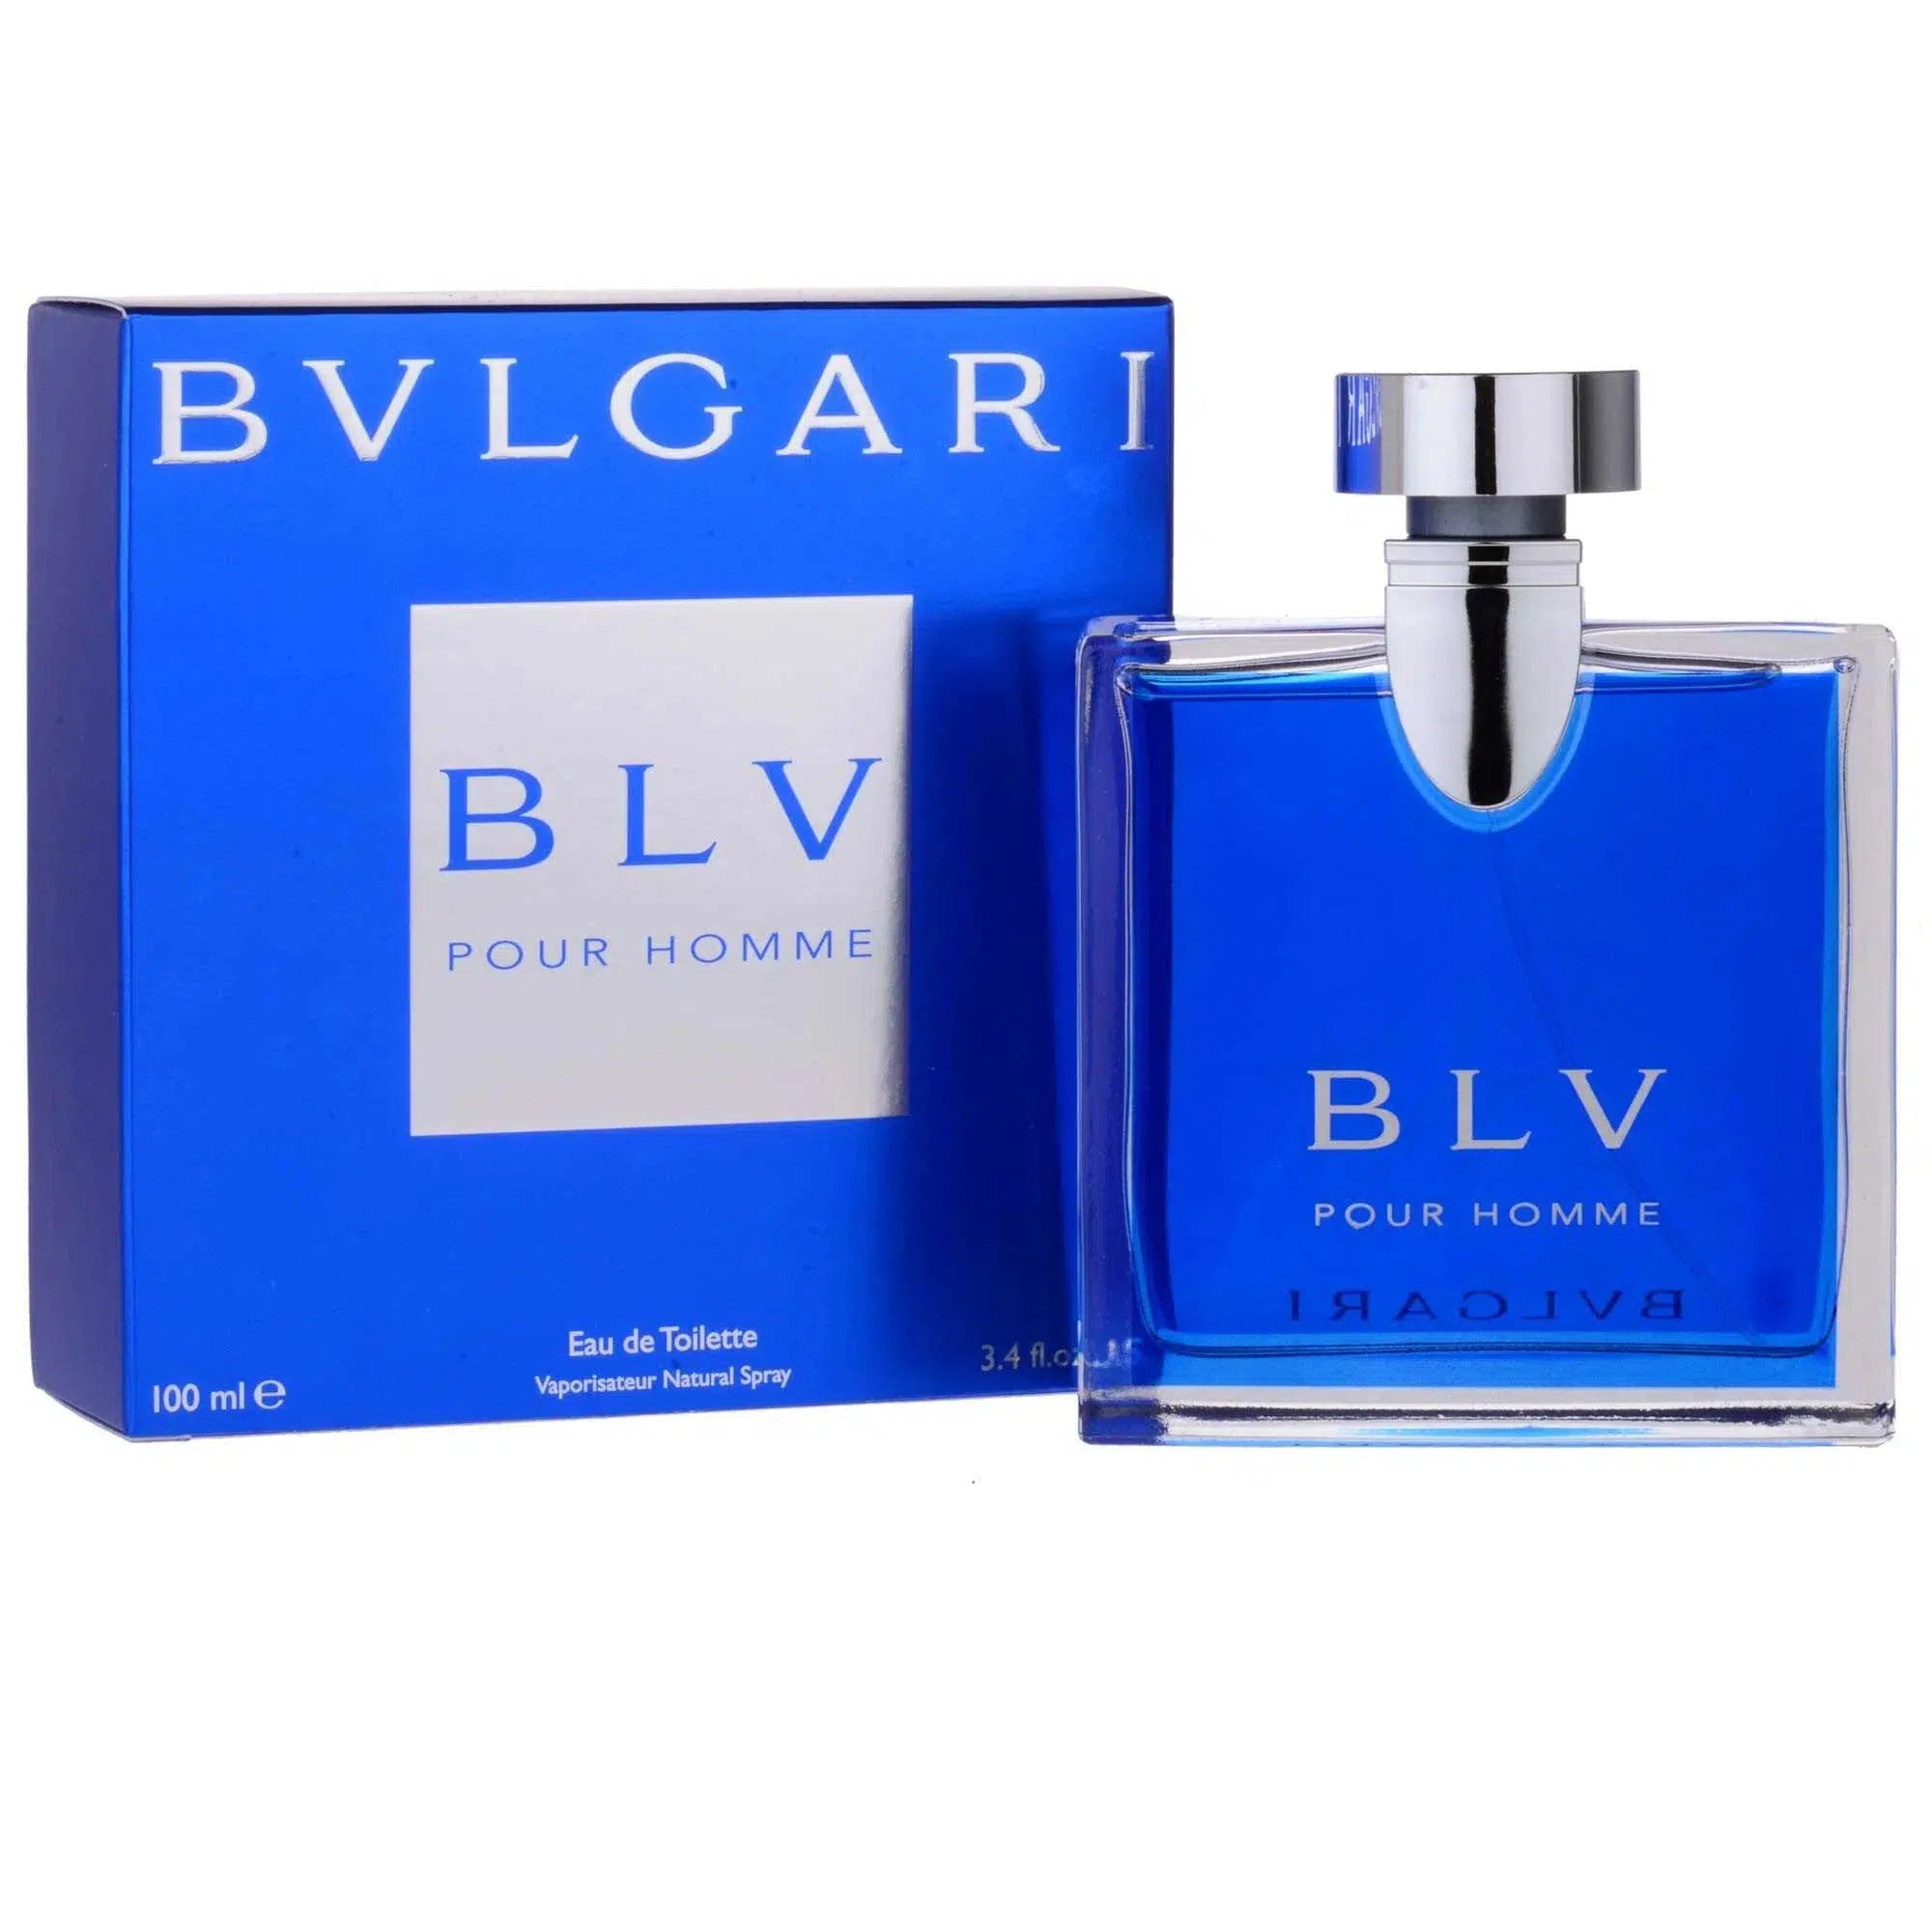 Bvlgari BLV 100ml - Perfume Philippines